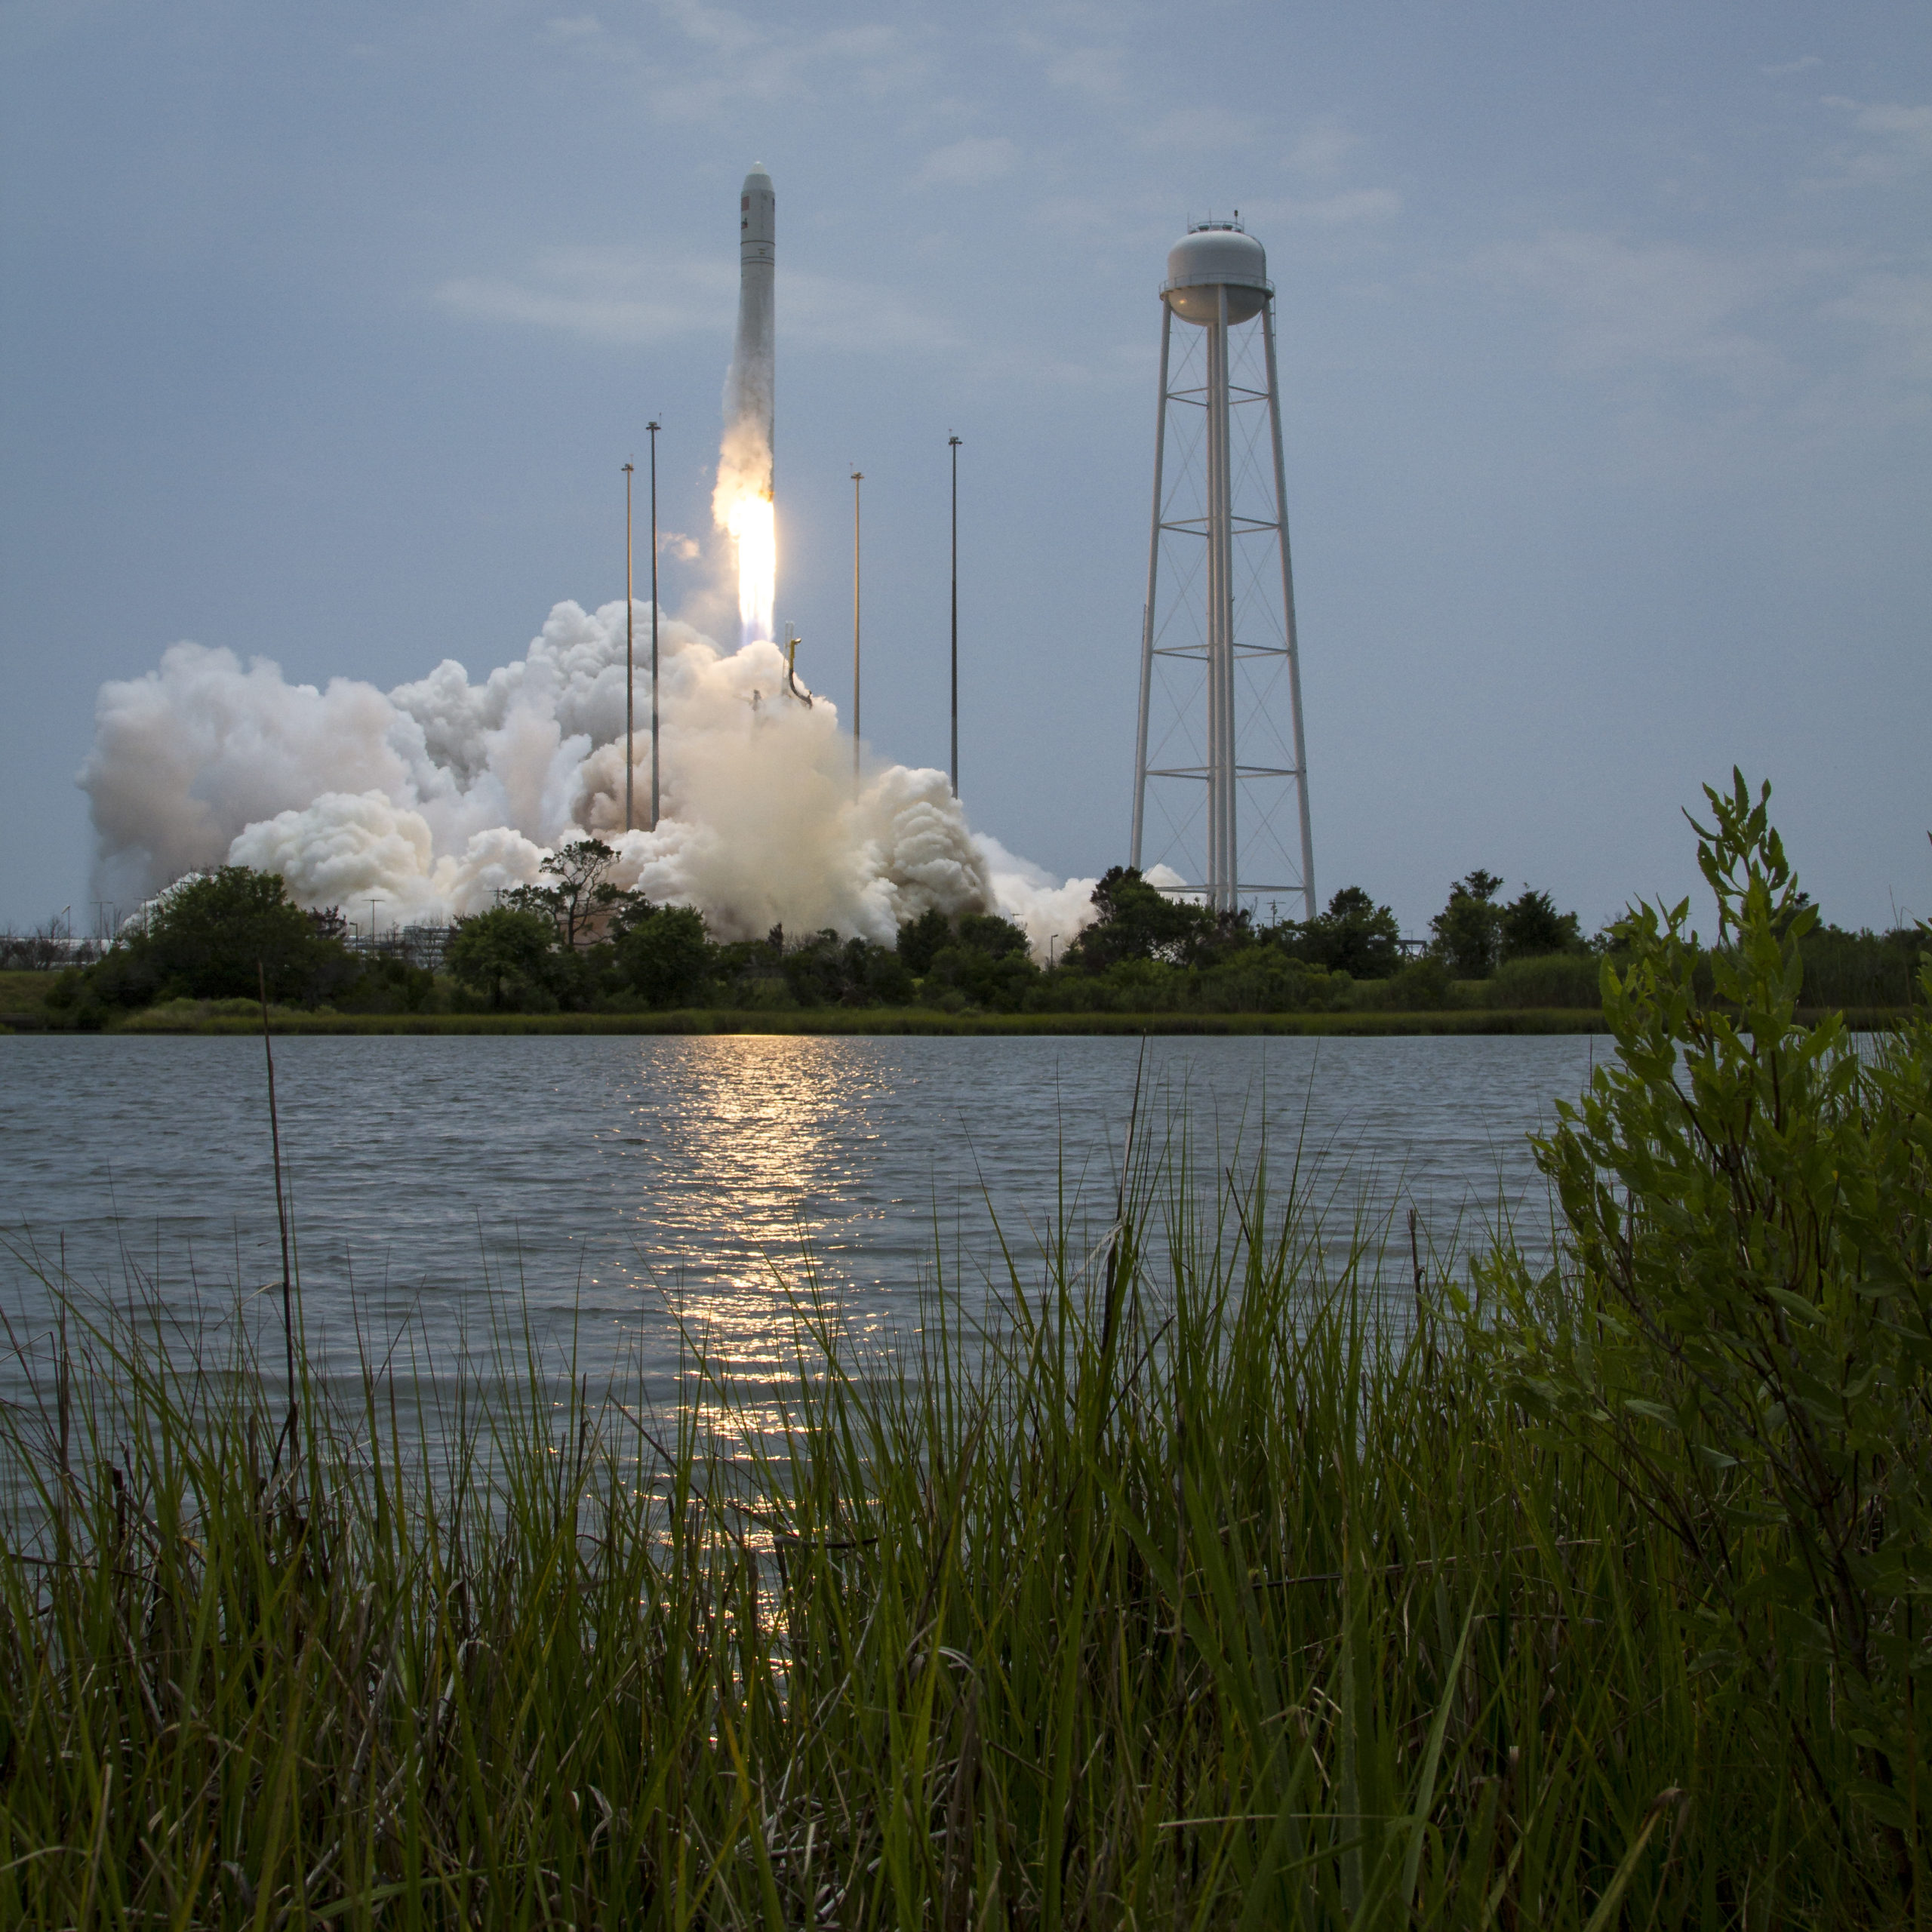 Best Spots on the Bay to Watch NASA Wallops Rocket Launch